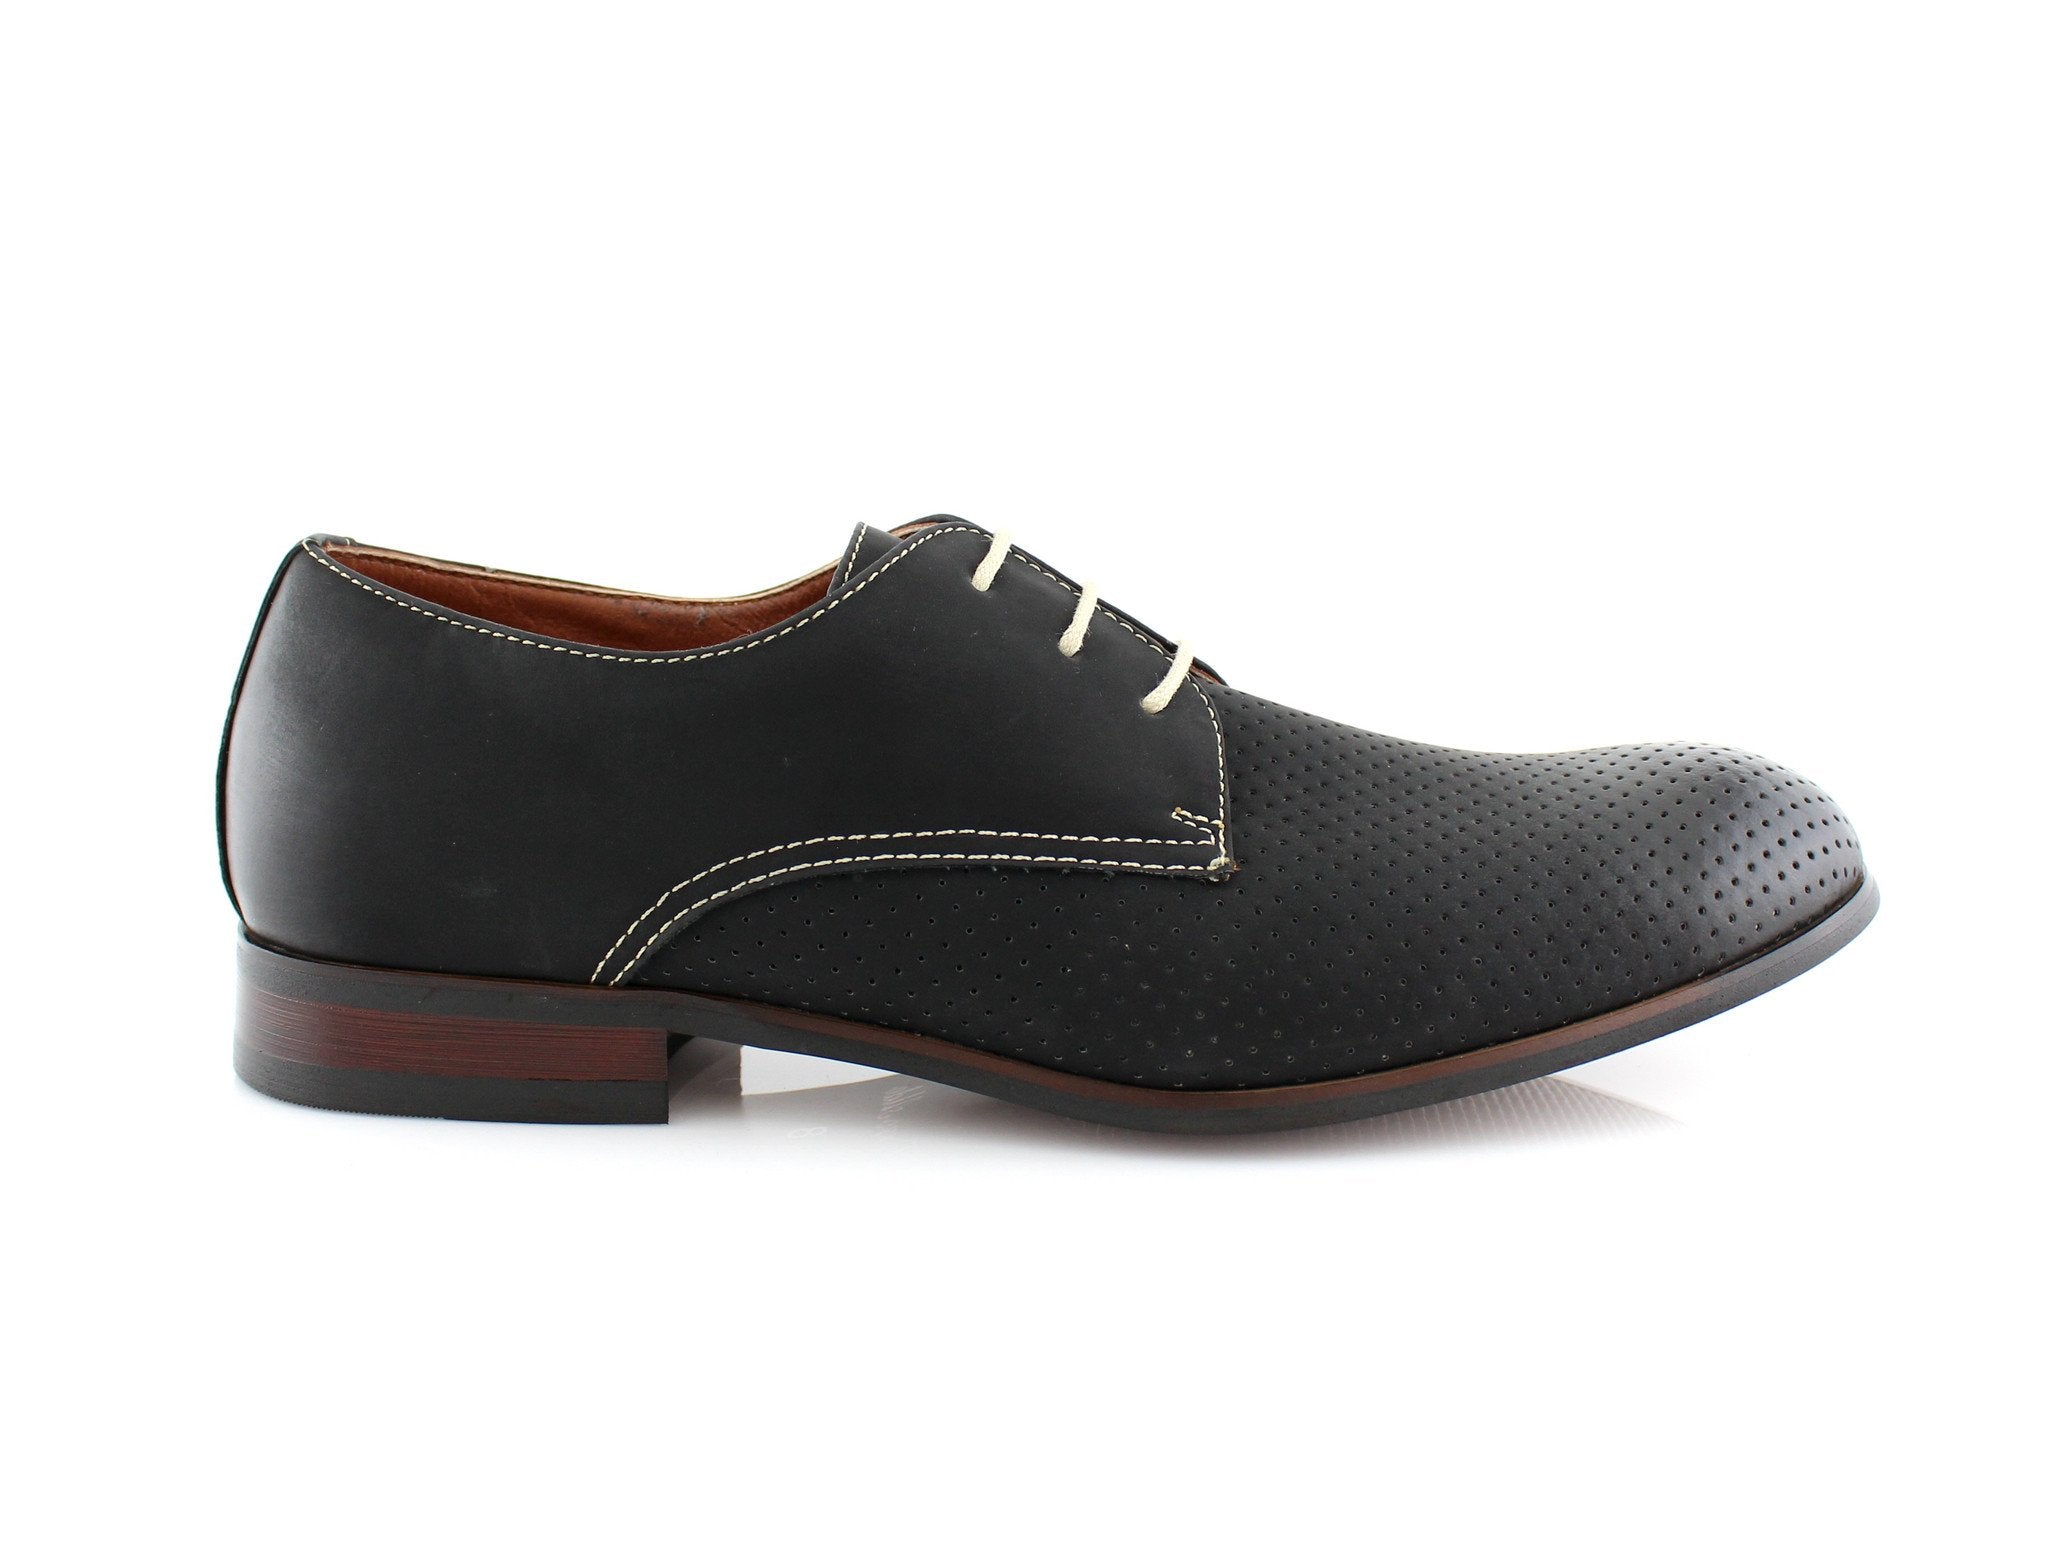 AP Dress Shoes for boys & men now available at AliPicks.com #dresshoes  #mensshoes #boyshoes